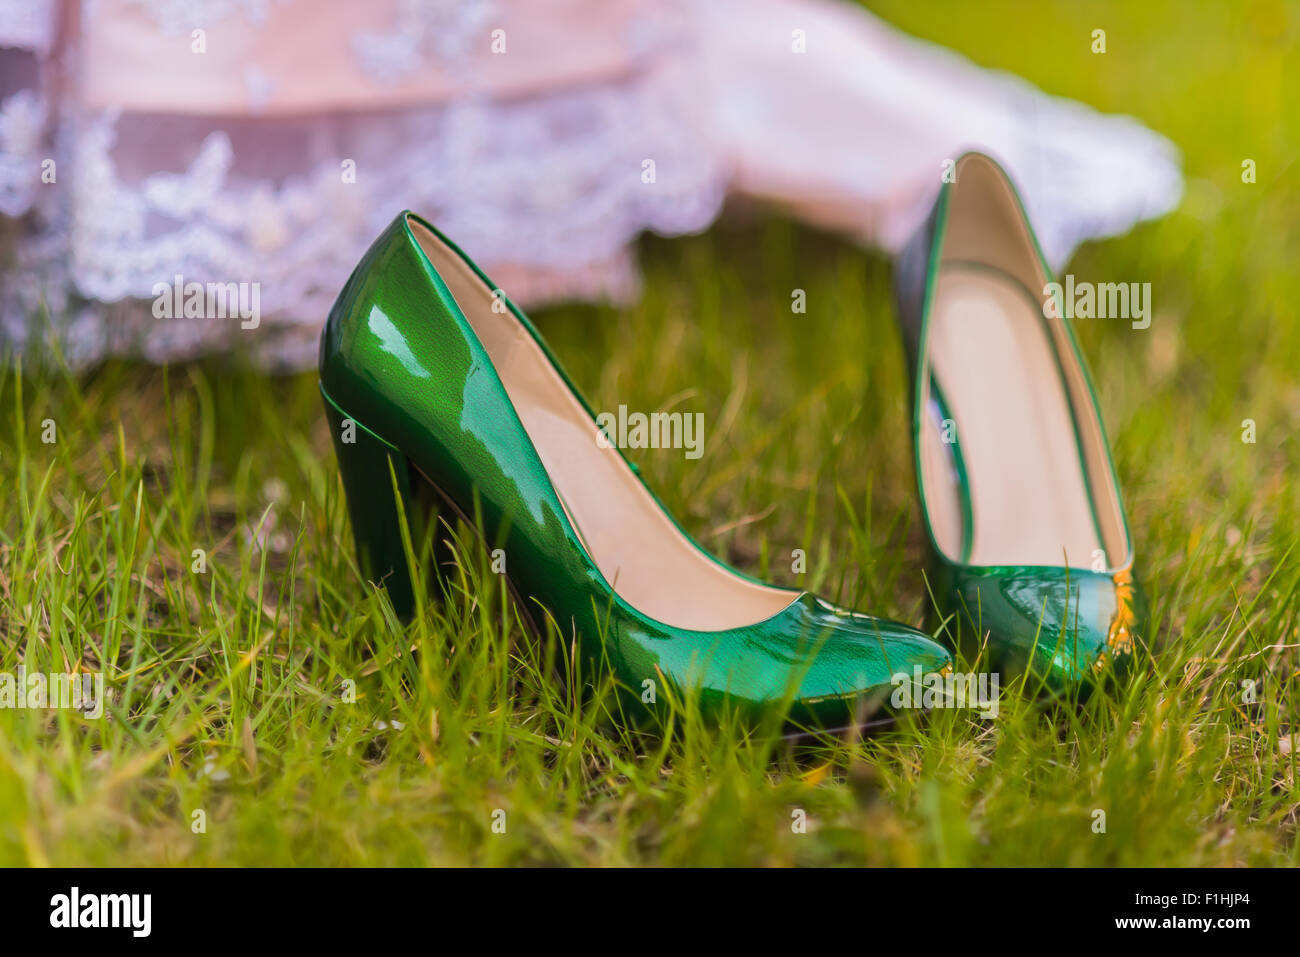 emerald bridal shoes